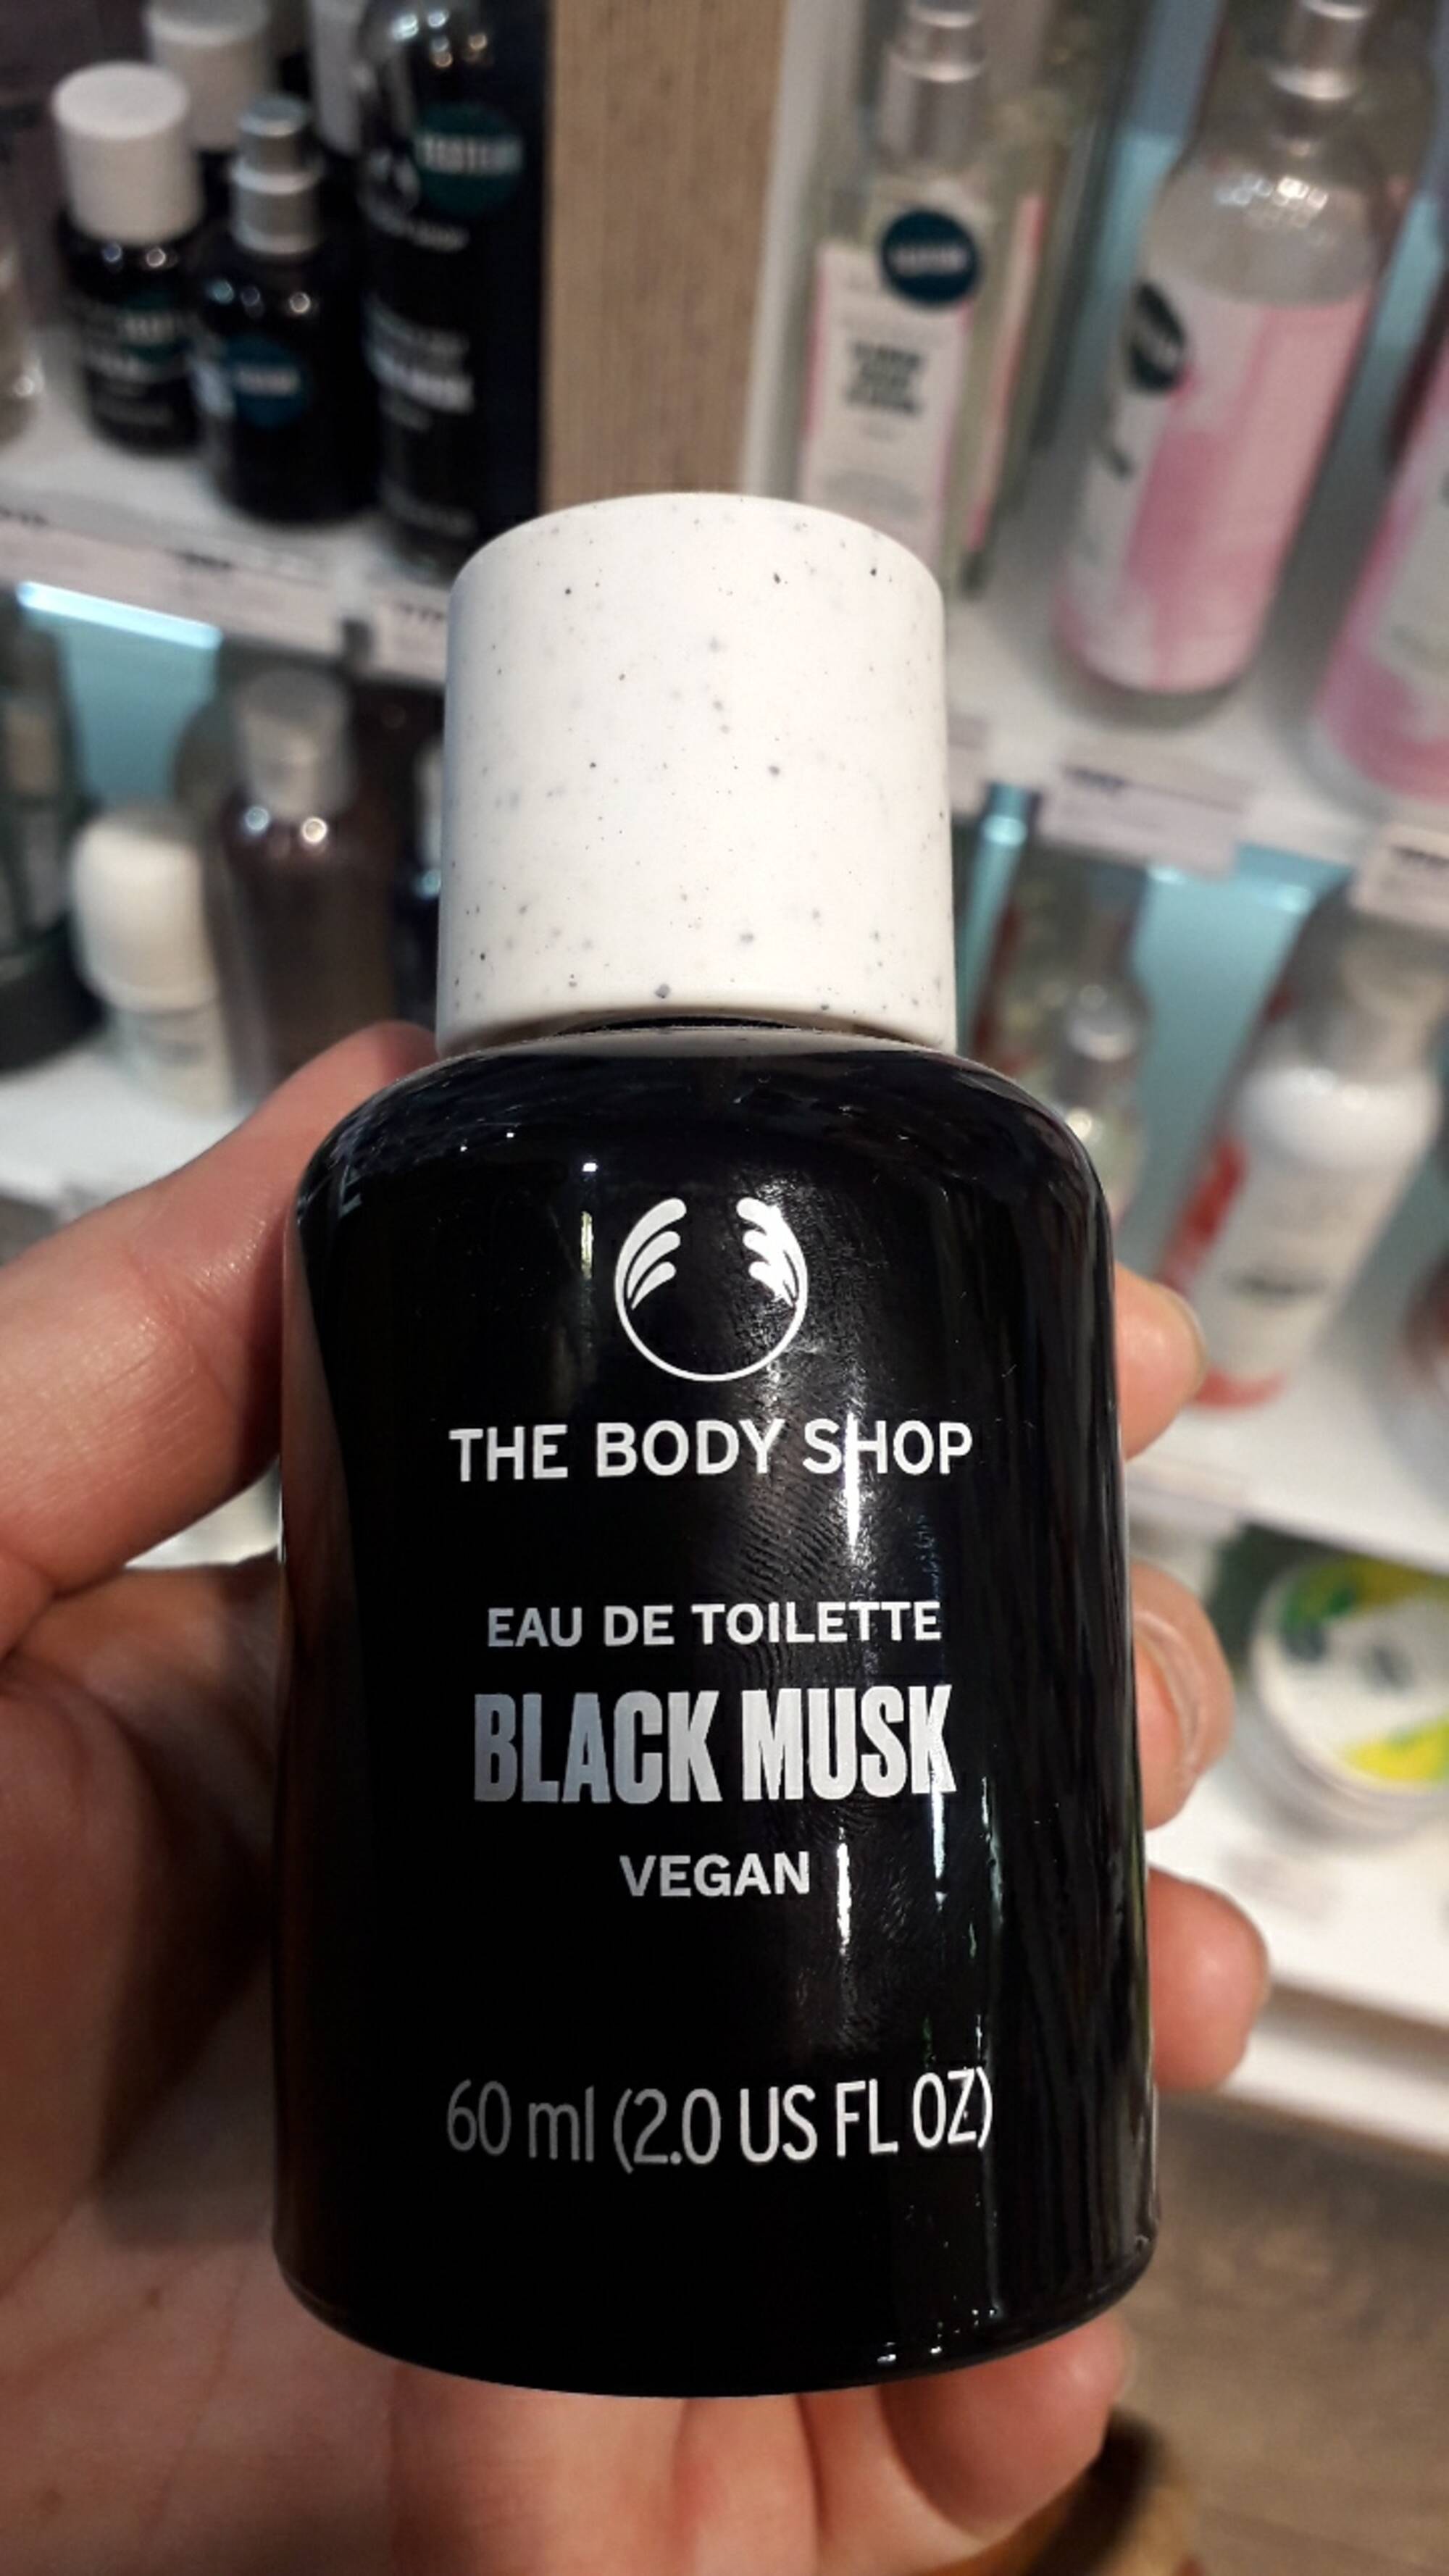 THE BODY SHOP - Black musk - Eau de toilette vegan 